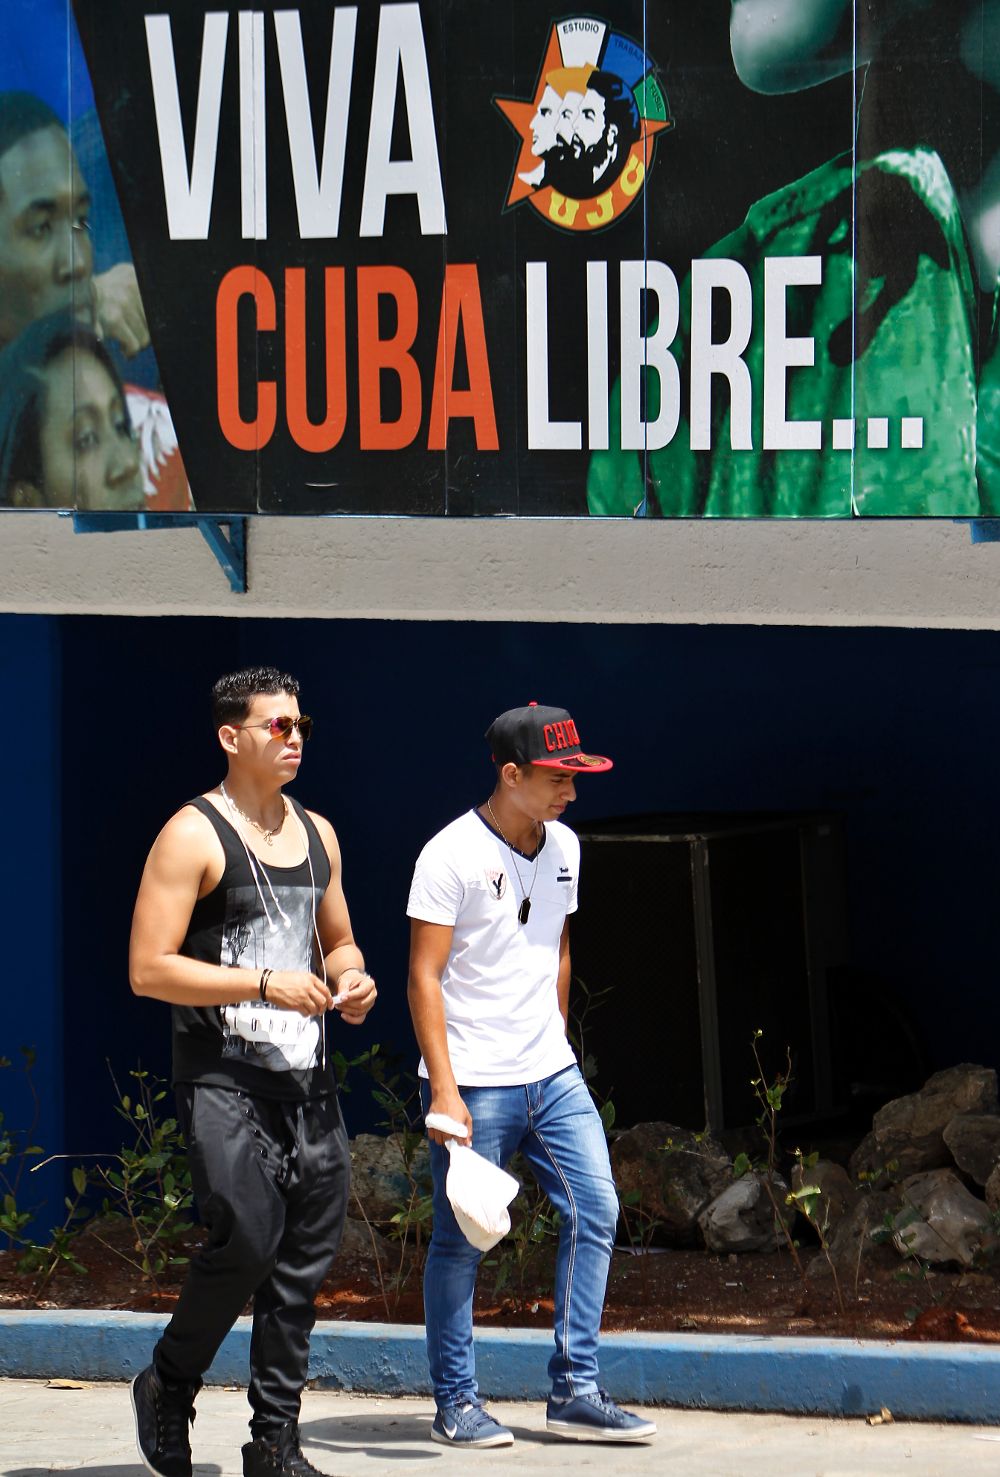 Dos jóvenes junto a un cartel alusivo a la Revolución cubana.